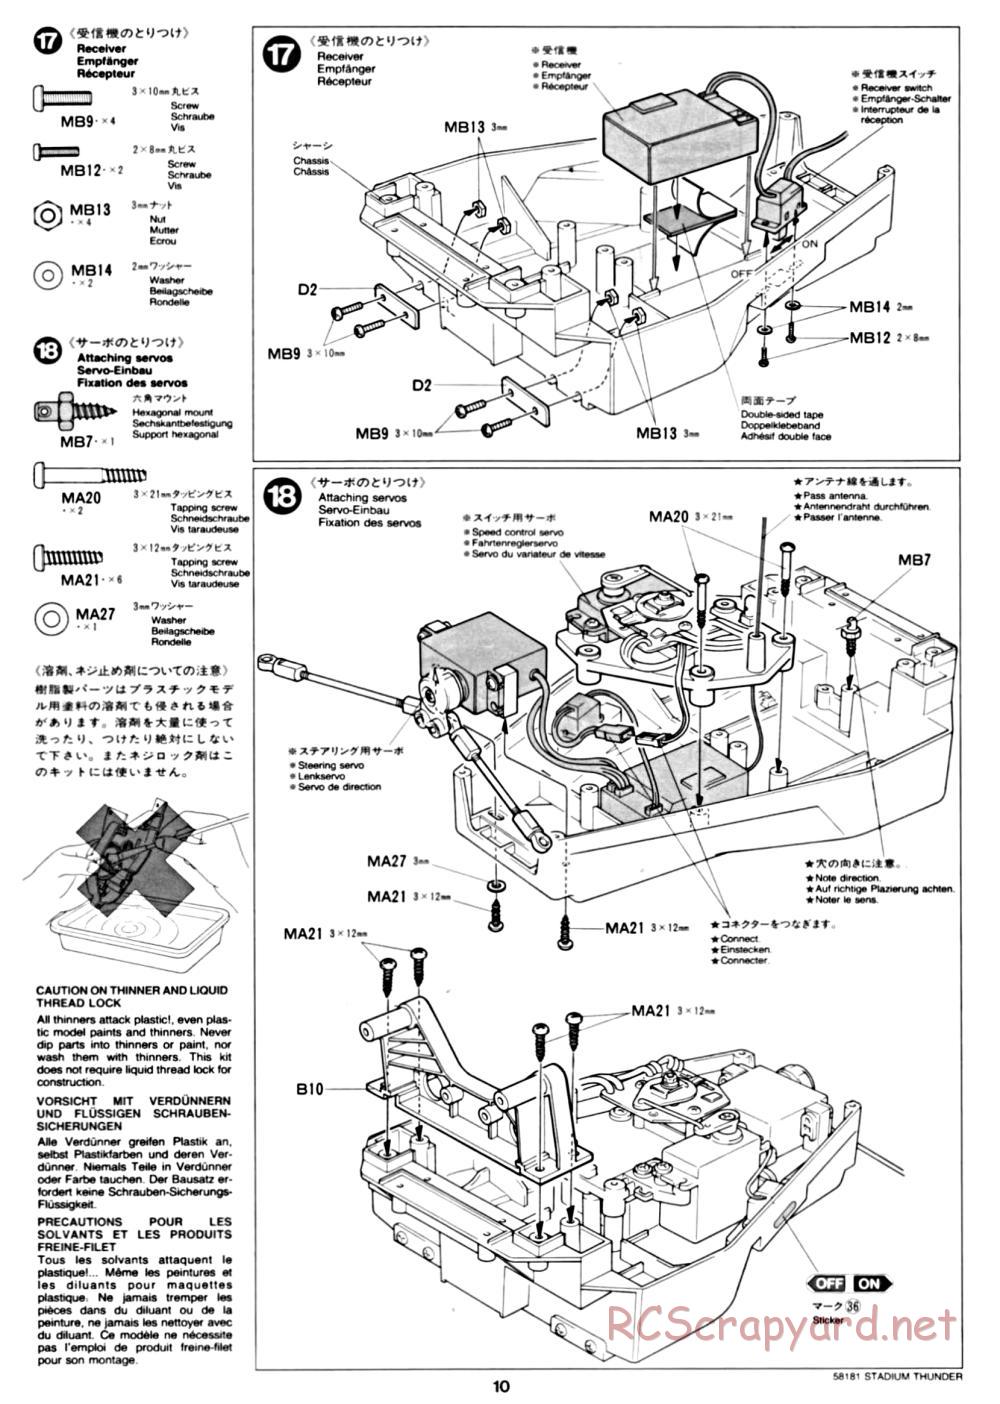 Tamiya - Stadium Thunder Chassis - Manual - Page 10